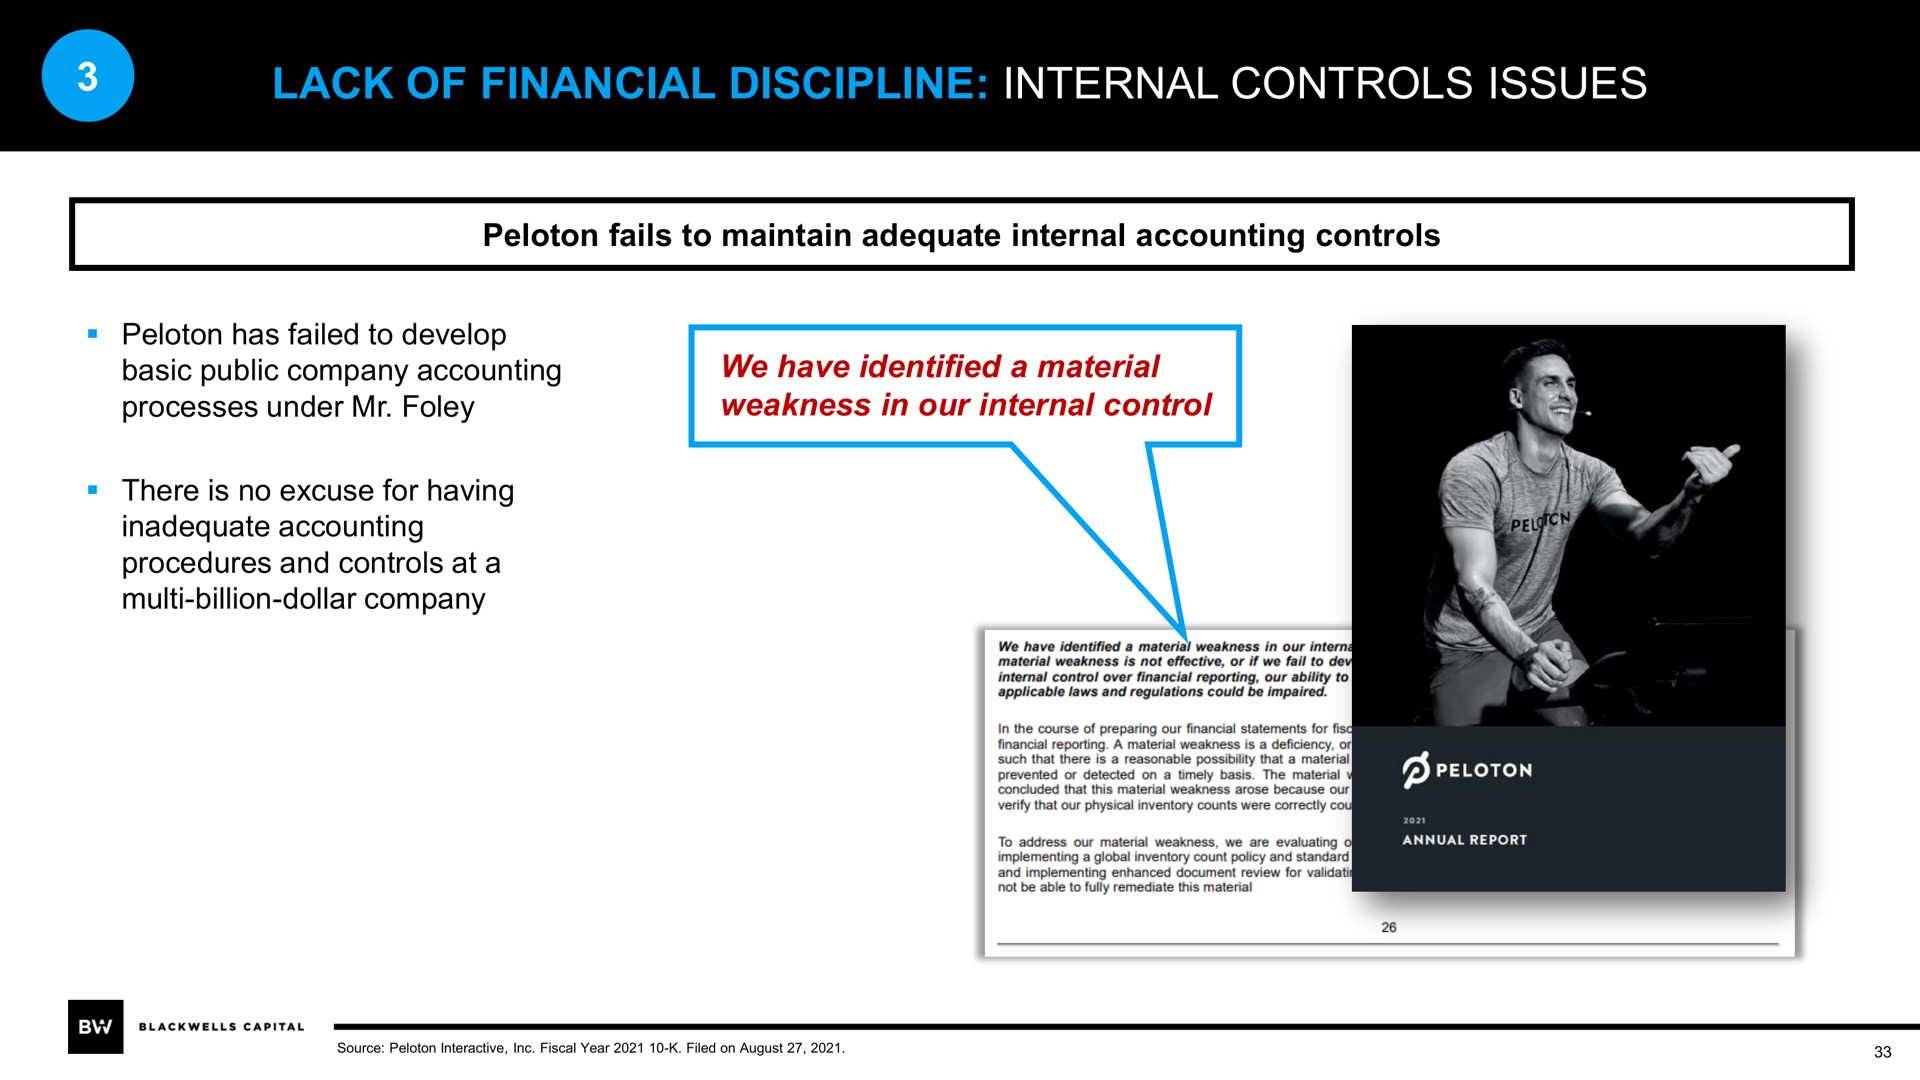 lack of financial discipline internal controls issues | Blackwells Capital